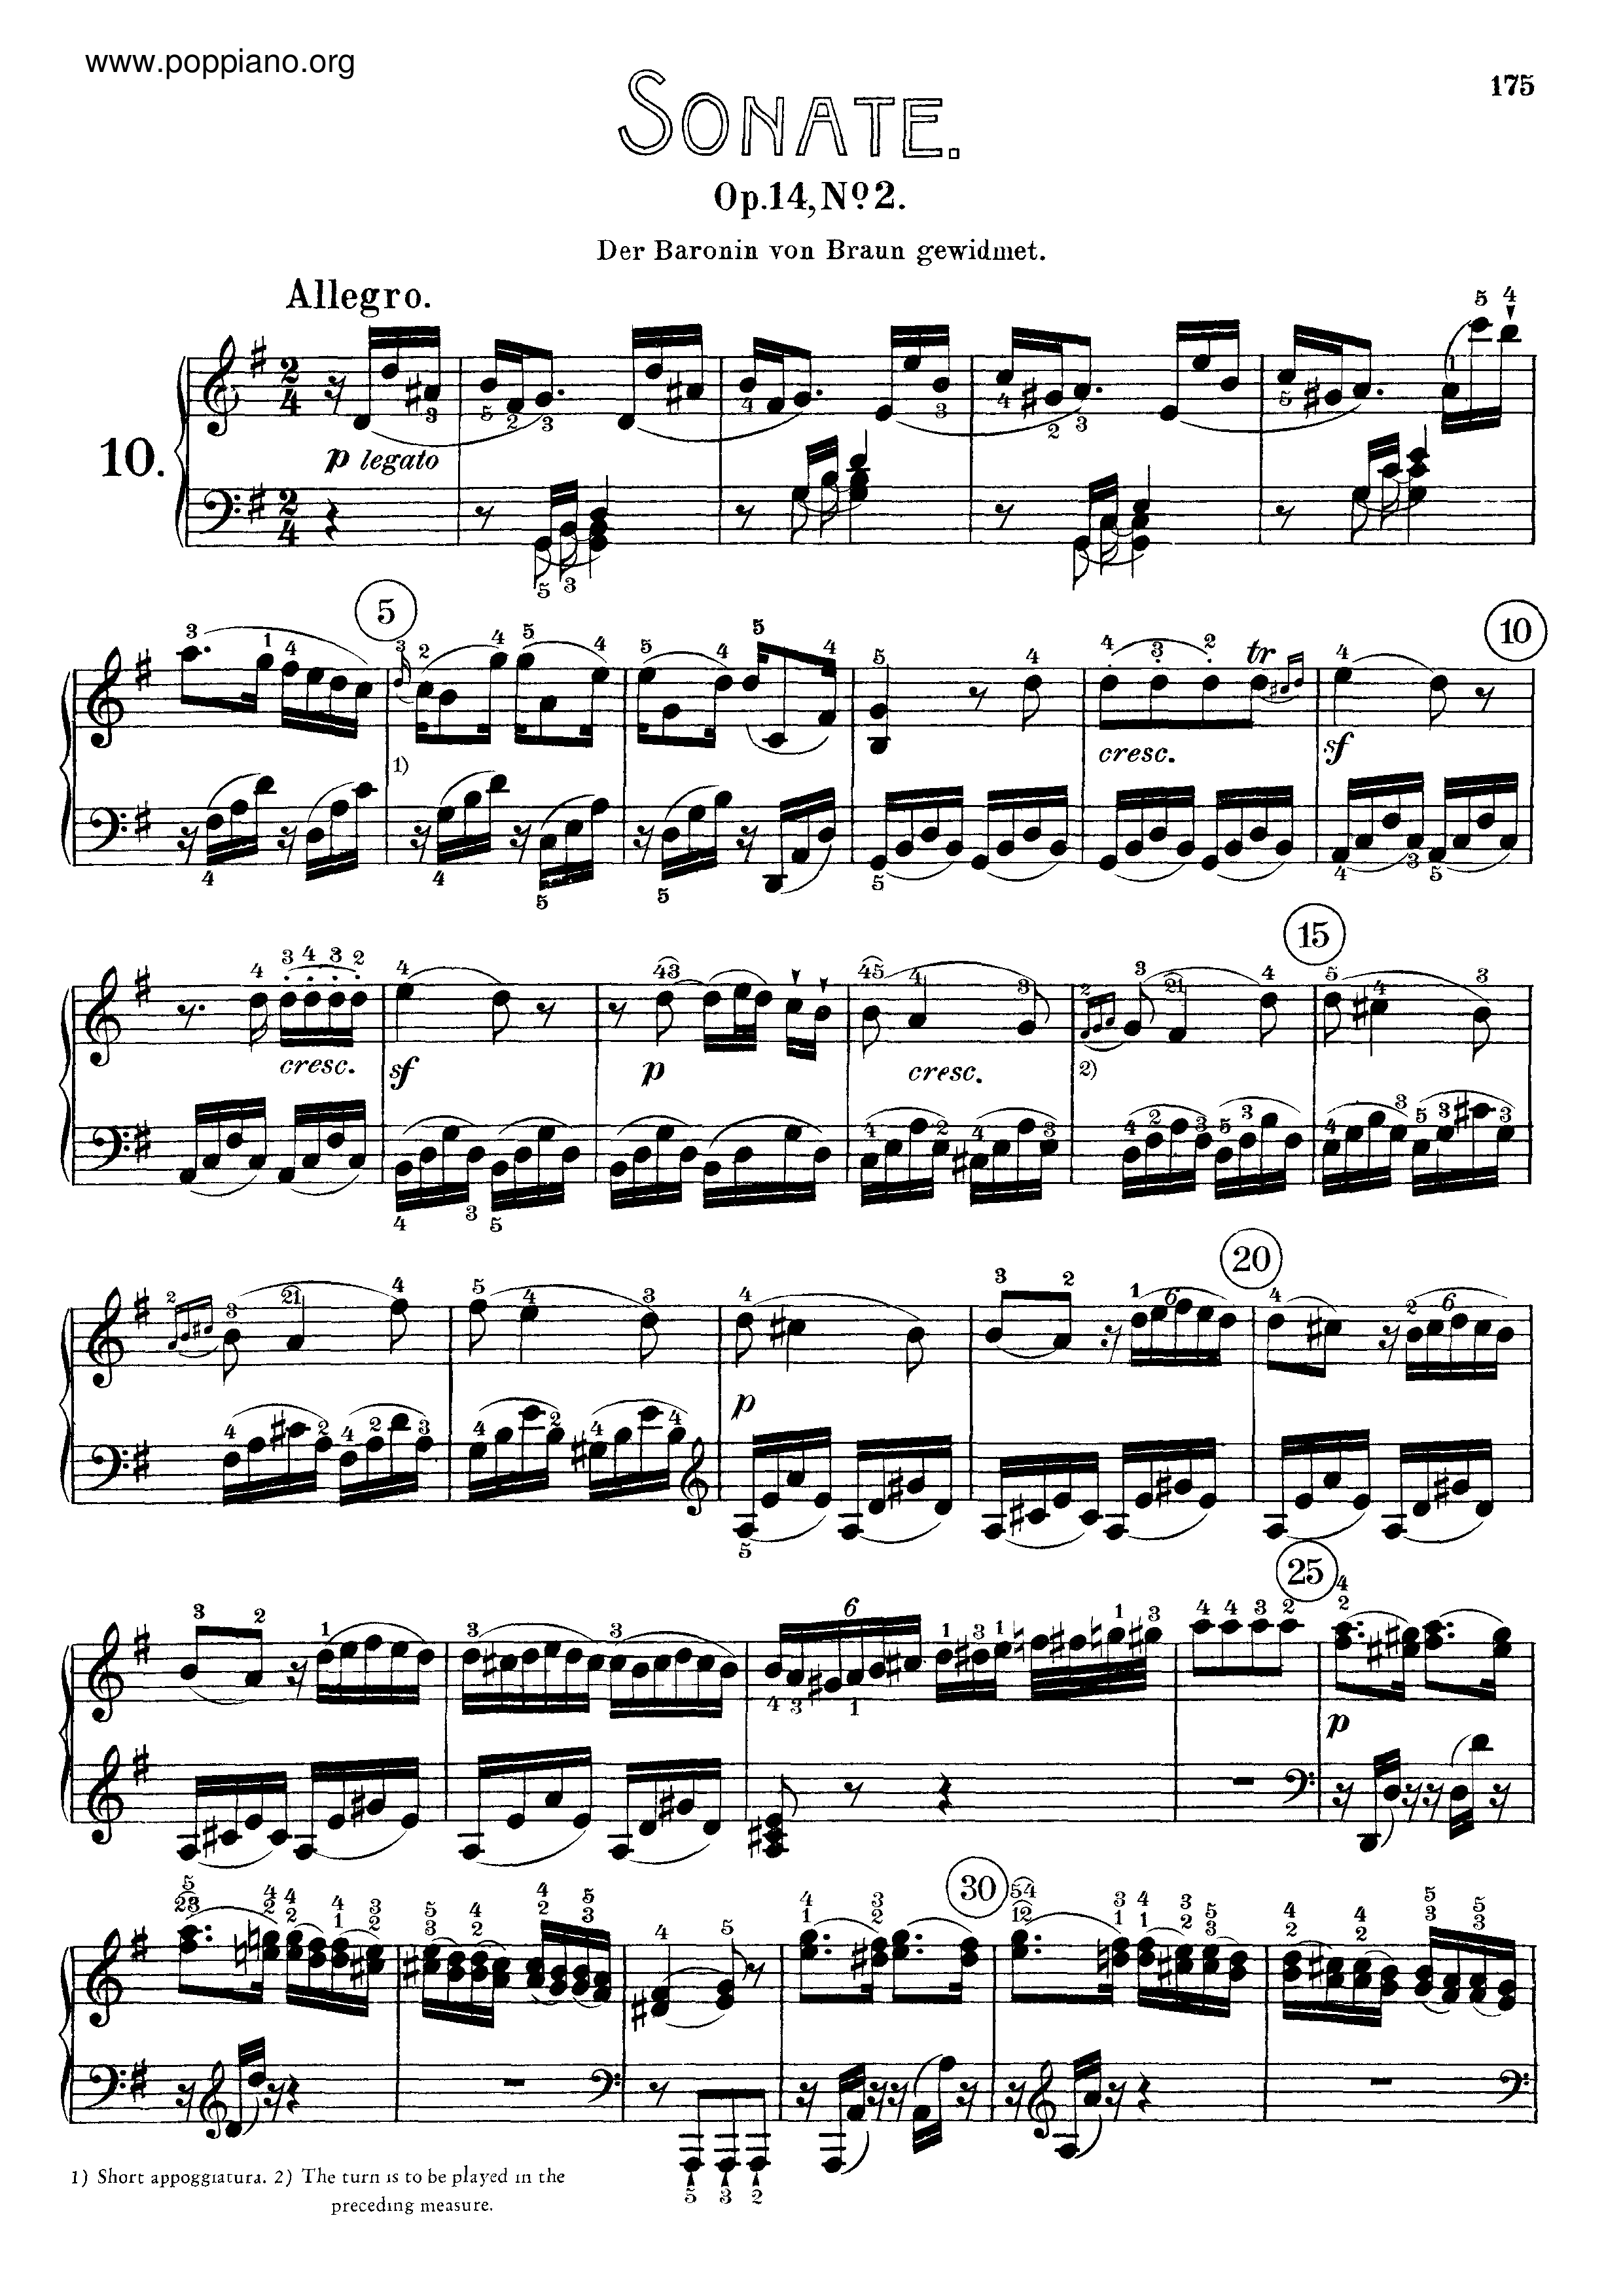 Sonata No. 10 in G major琴譜